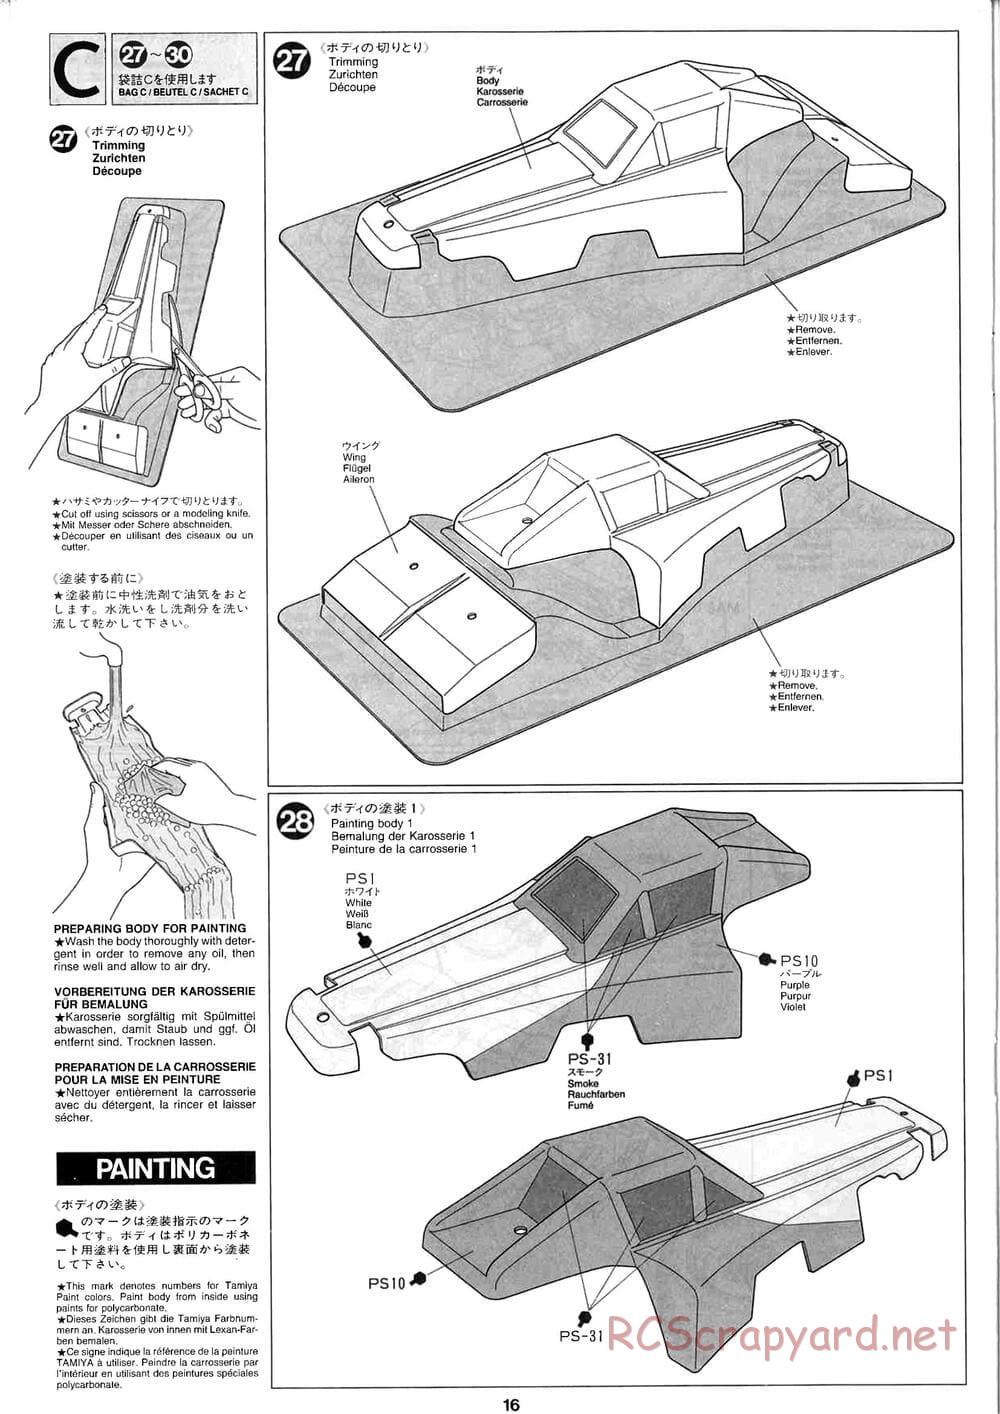 Tamiya - Baja Champ - TL-01B Chassis - Manual - Page 16